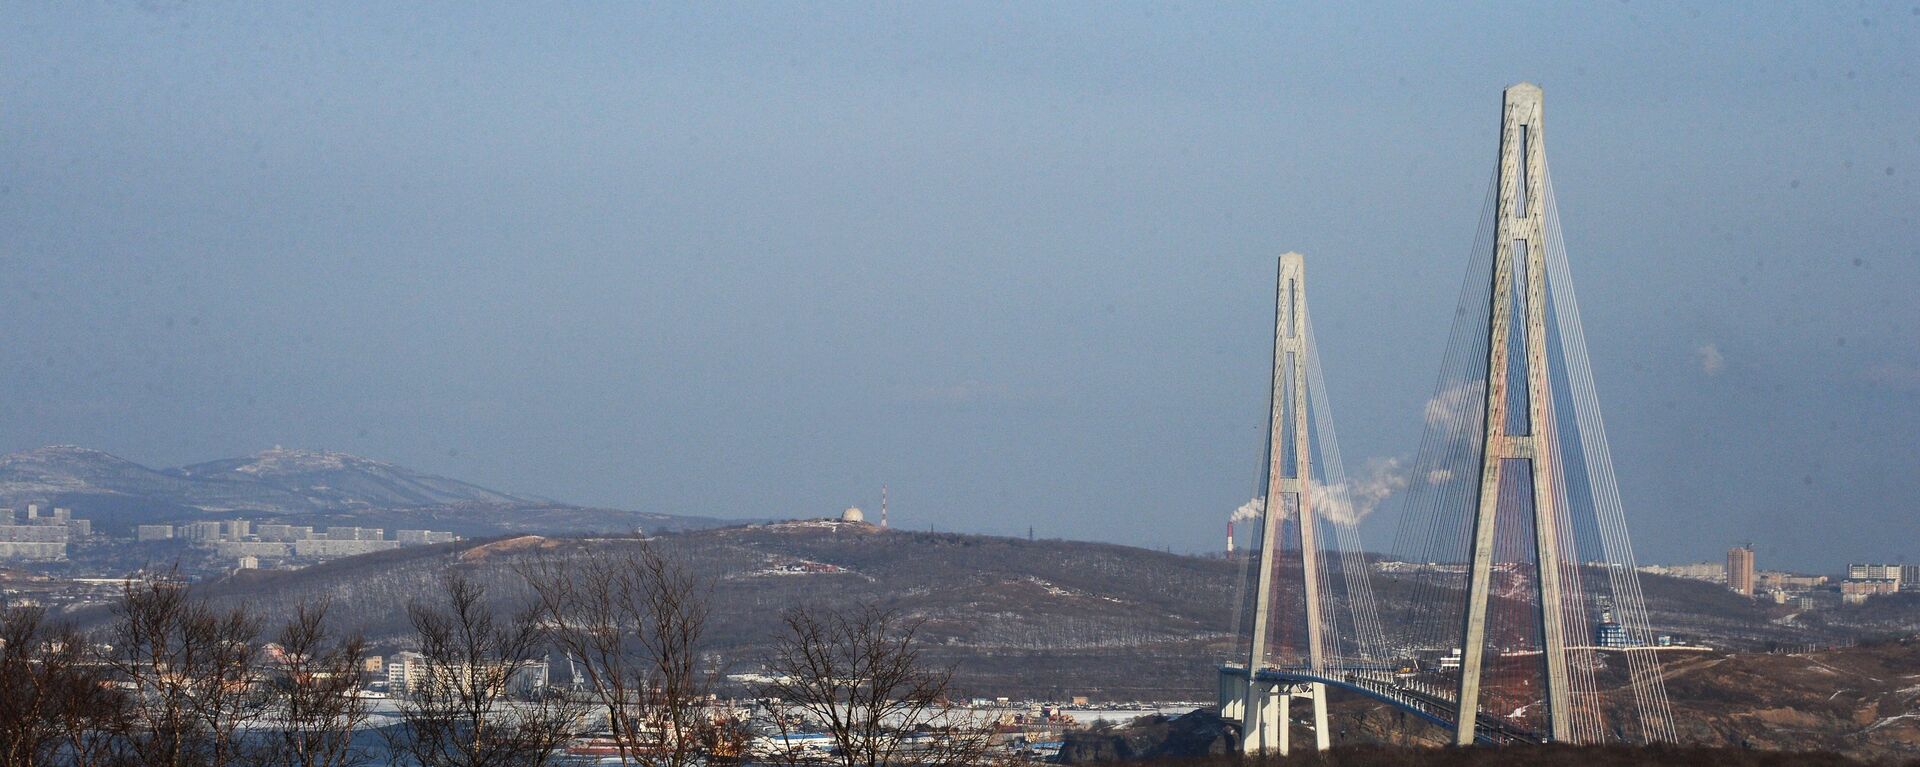 El puente Russki en la ciudad de Vladivostok - Sputnik Mundo, 1920, 03.09.2021